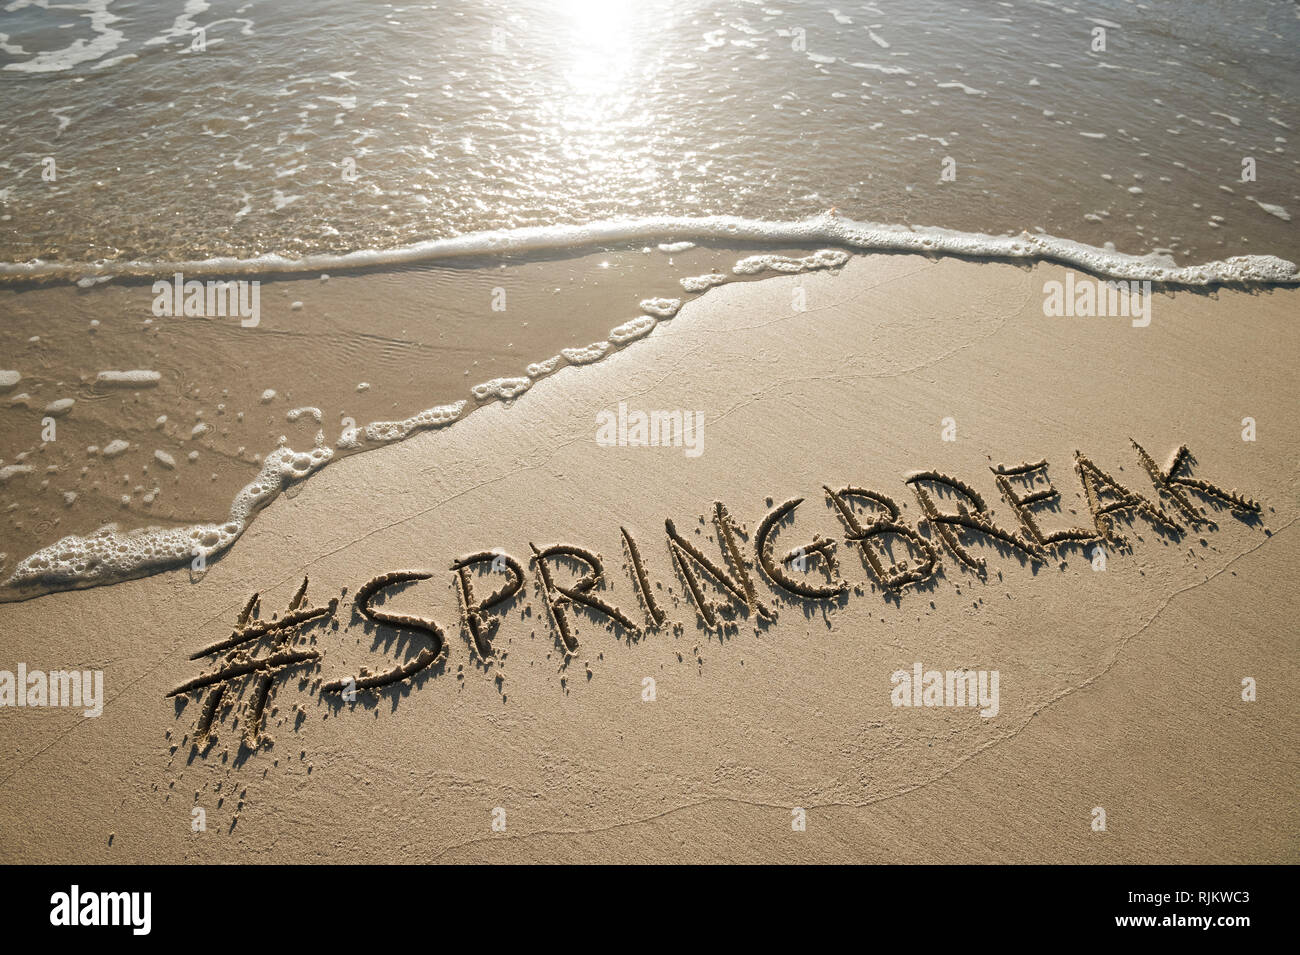 Moderne Spring Break Nachricht handschriftlich mit einem social media Hashtag auf der glatten Sand eines leeren Strand mit einem entgegenkommenden Wave Stockfoto